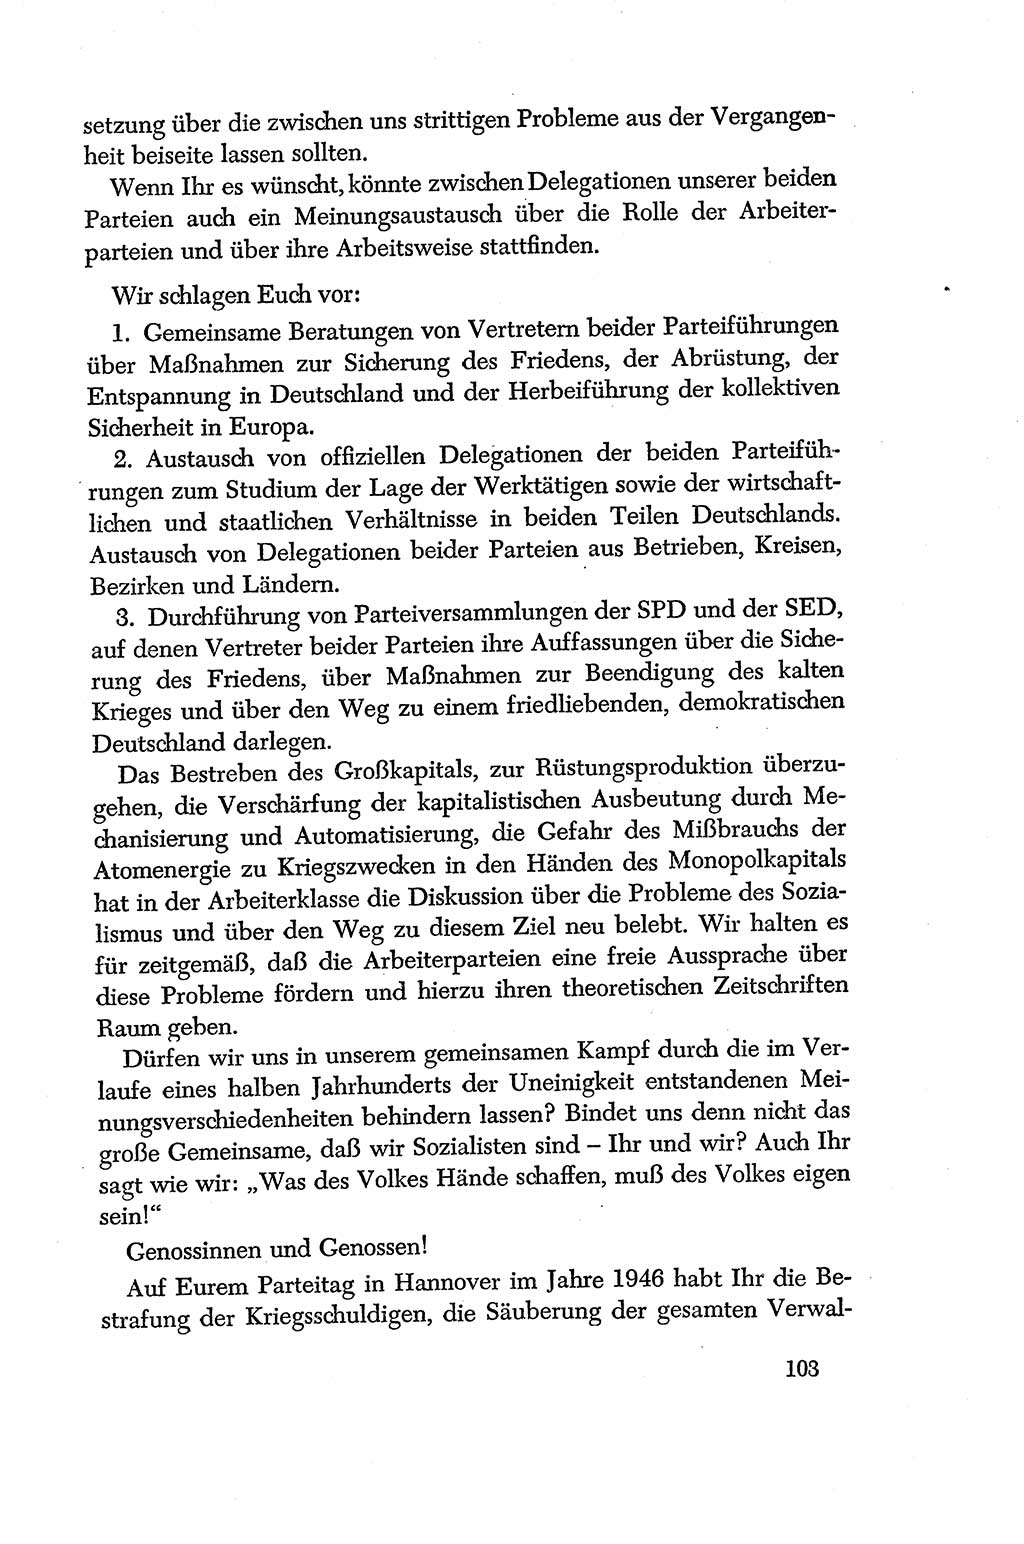 Dokumente der Sozialistischen Einheitspartei Deutschlands (SED) [Deutsche Demokratische Republik (DDR)] 1956-1957, Seite 103 (Dok. SED DDR 1956-1957, S. 103)